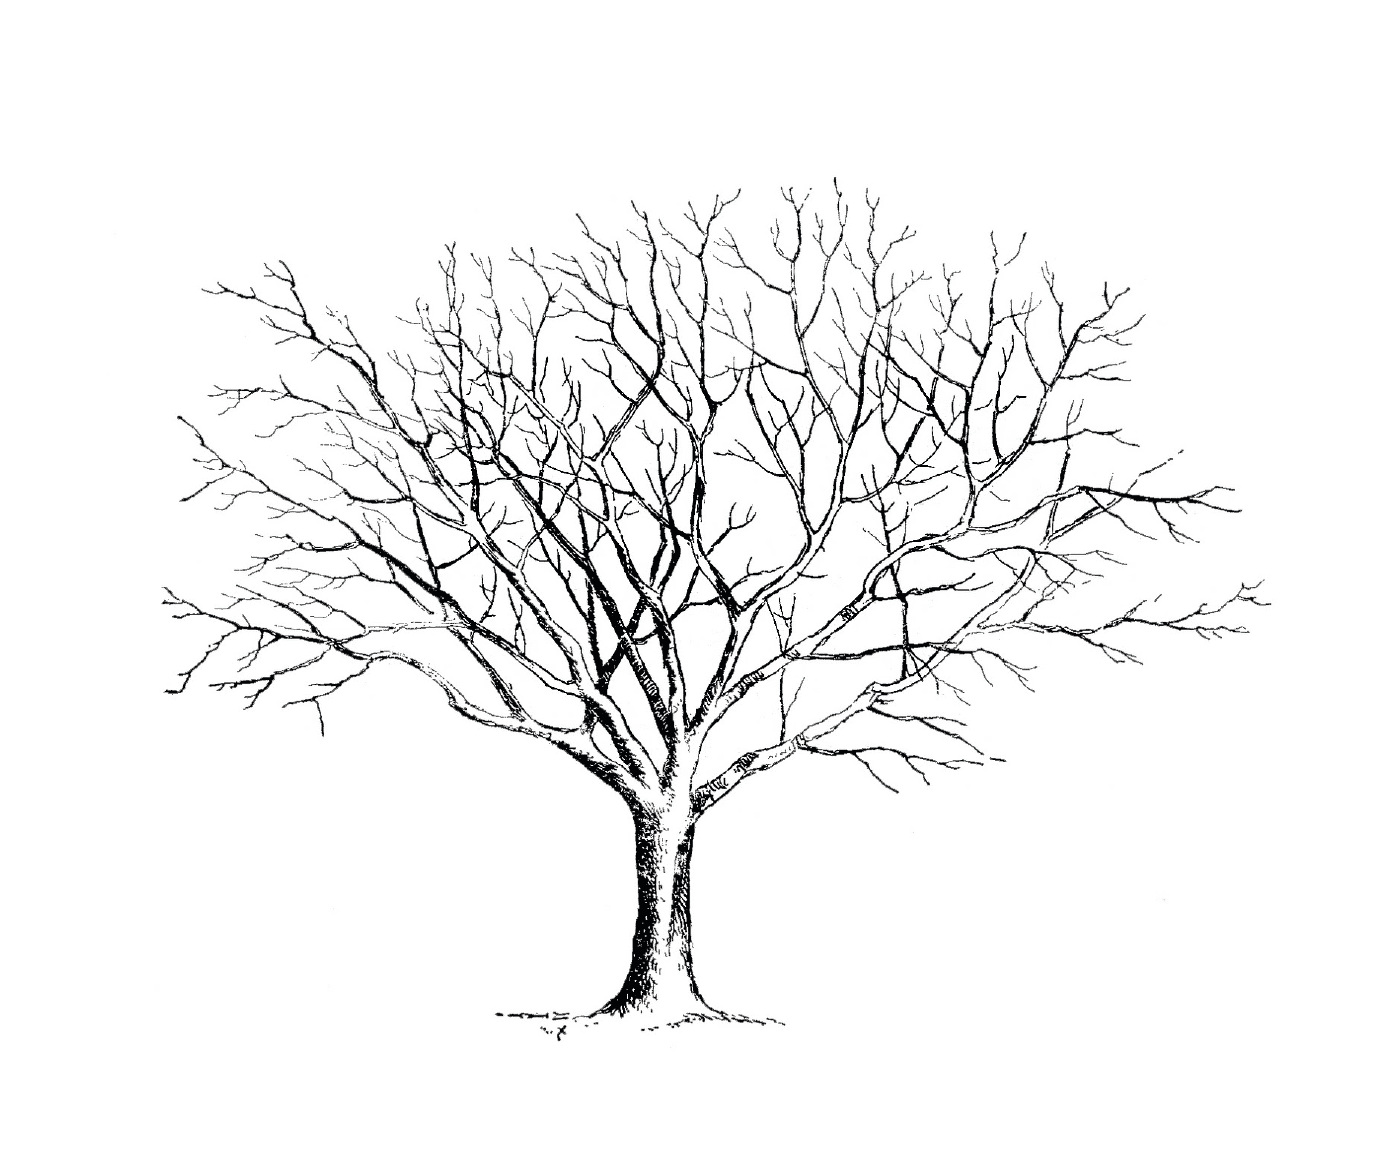  Un árbol desnudo sin hojas 